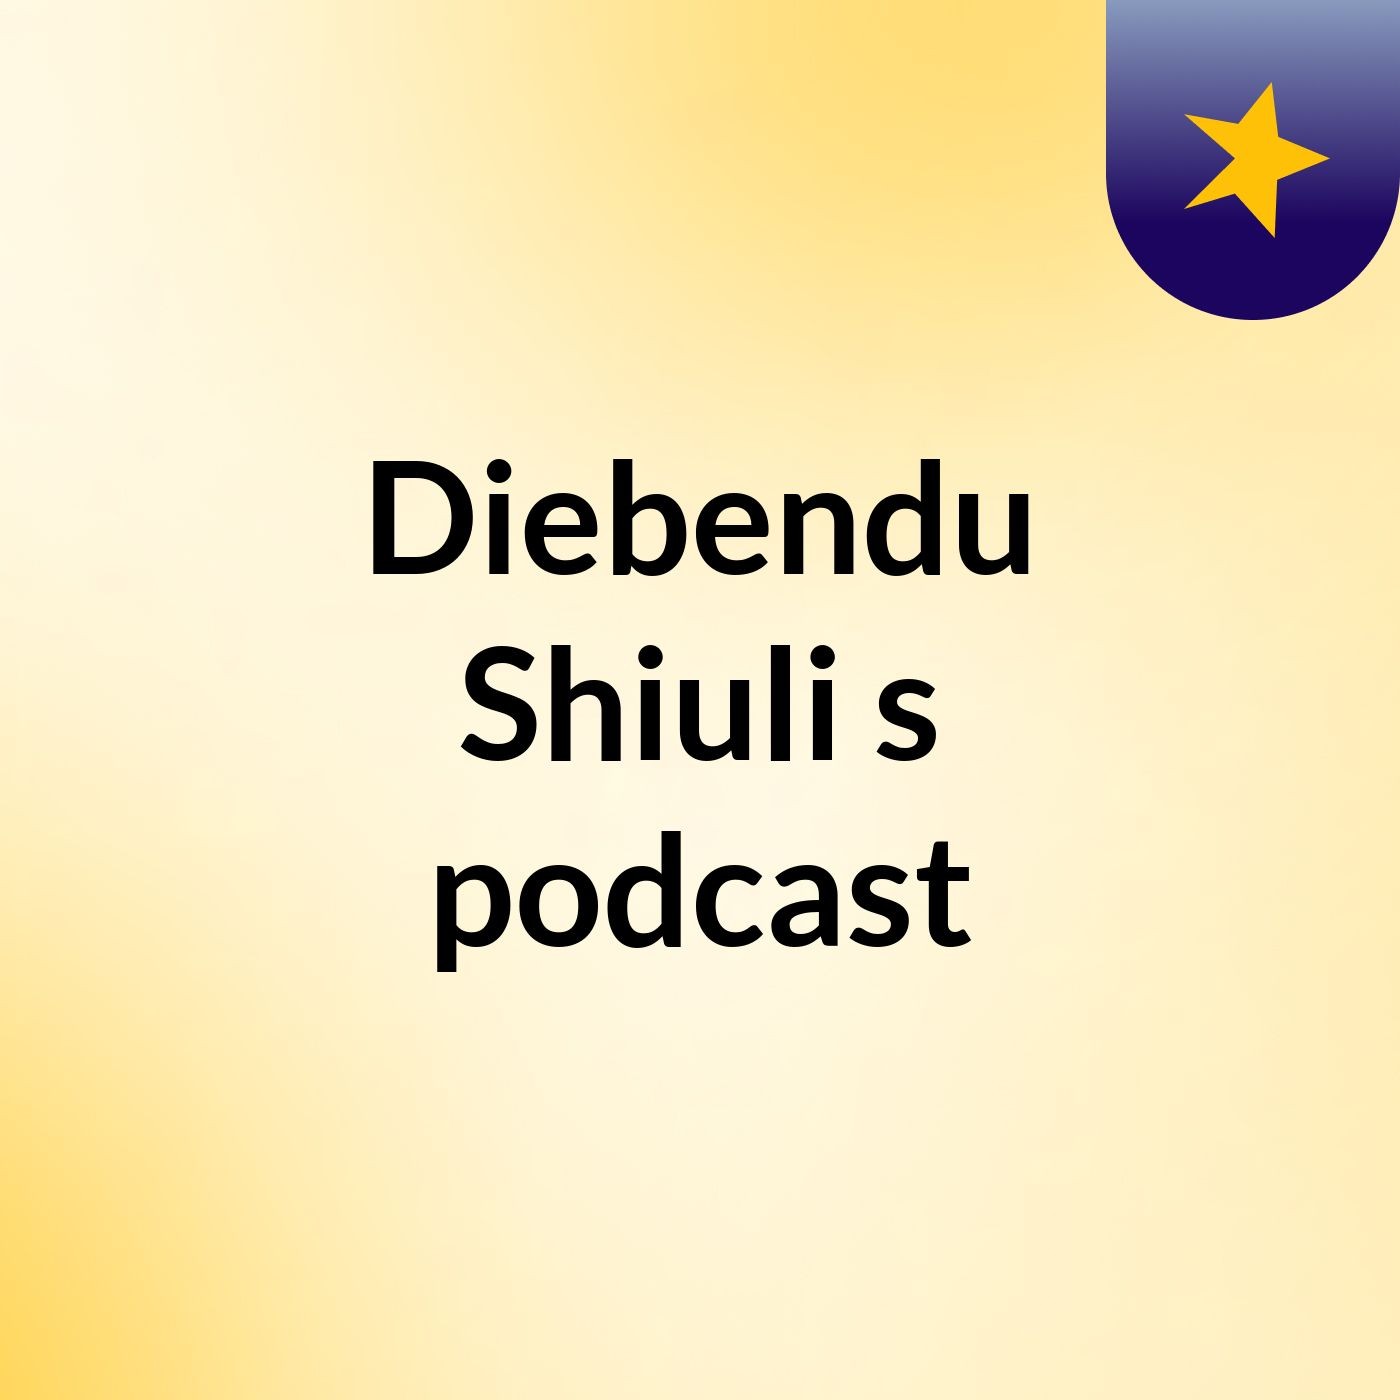 Episode 2 - Diebendu Shiuli's podcast